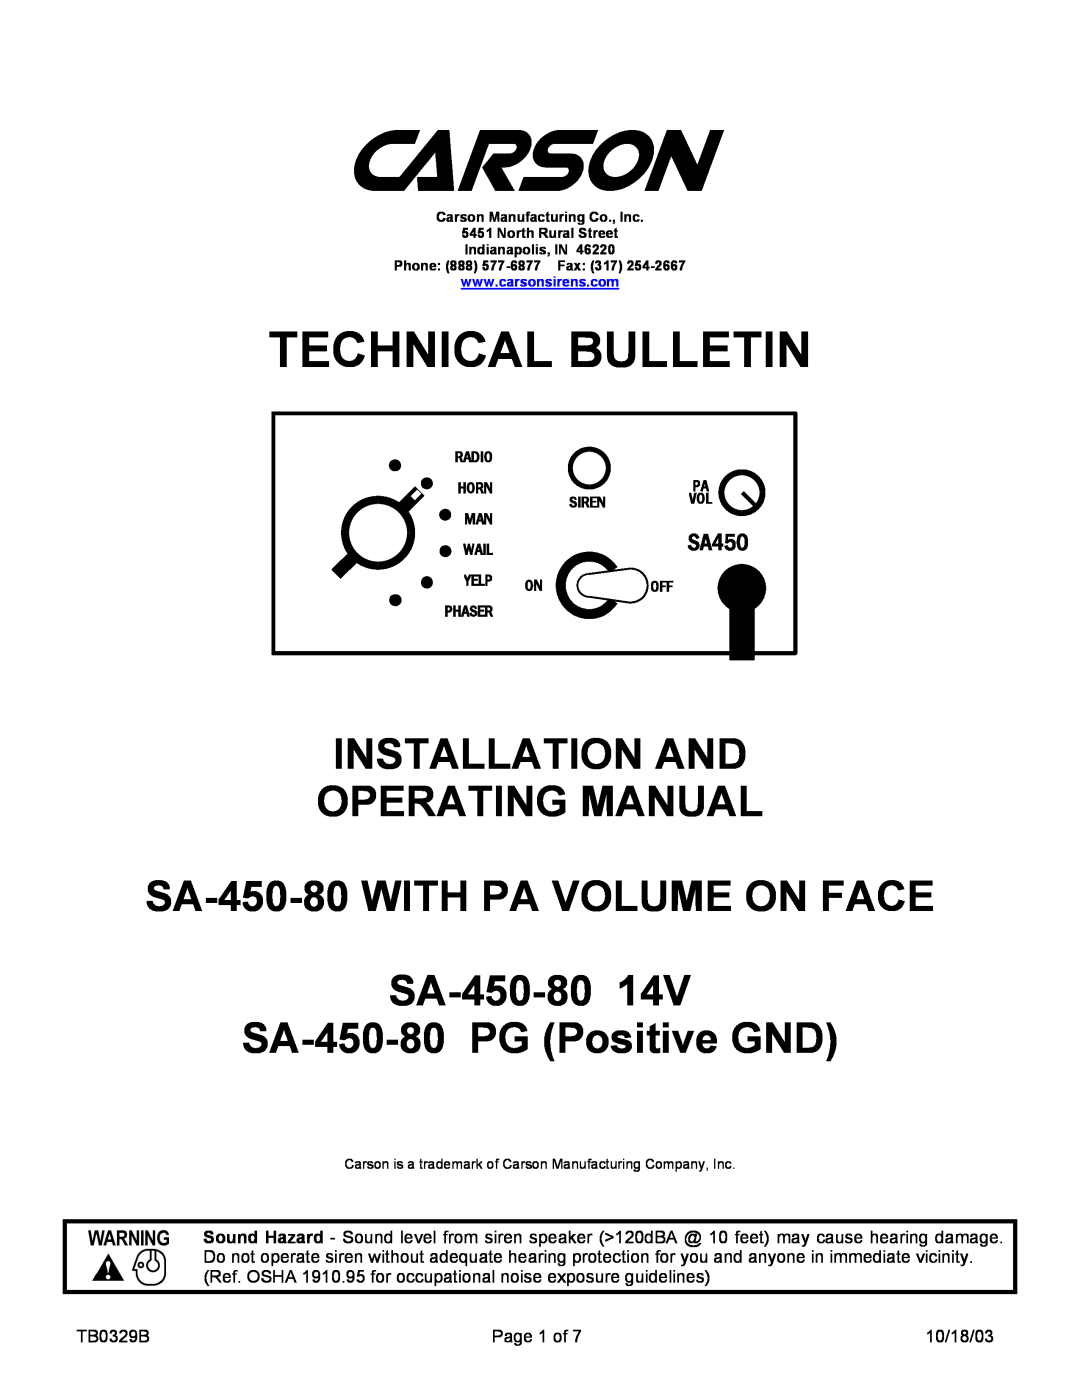 Carson SA-450-80 PG manual SA450, Technical Bulletin, Installation And Operating Manual, SA-450-80PG Positive GND 